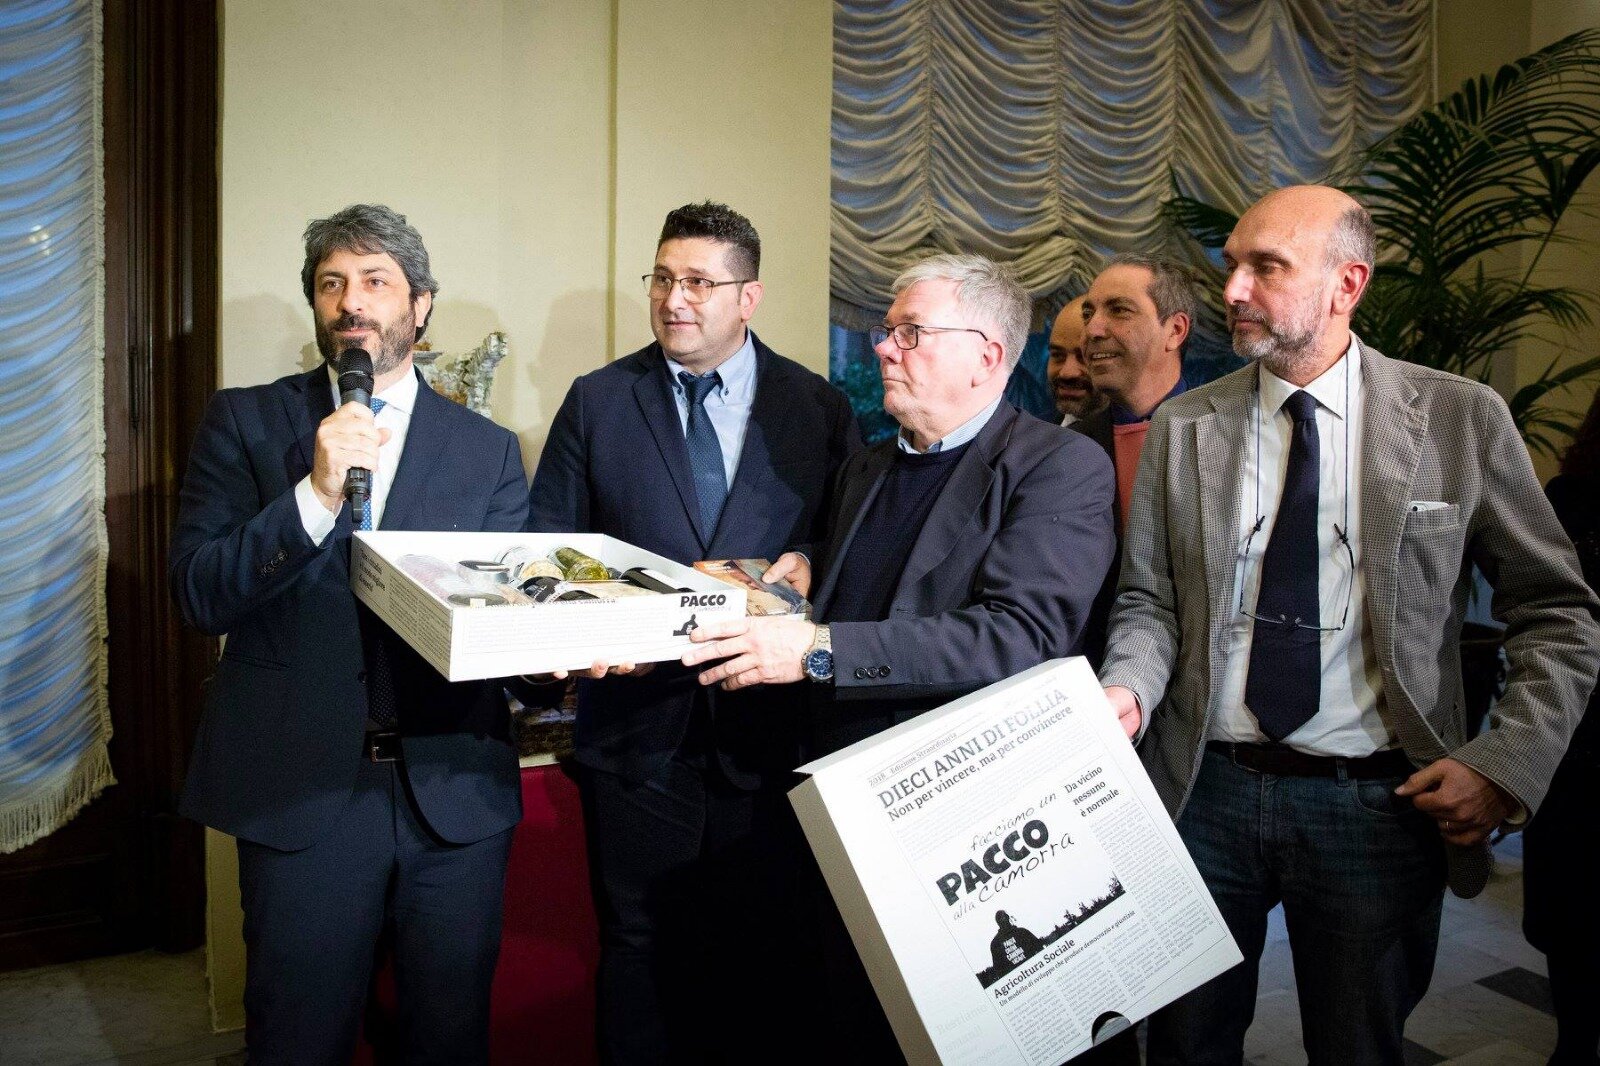 Il Presidente della Camera, Roberto Fico riceve “Il pacco alla camorra”